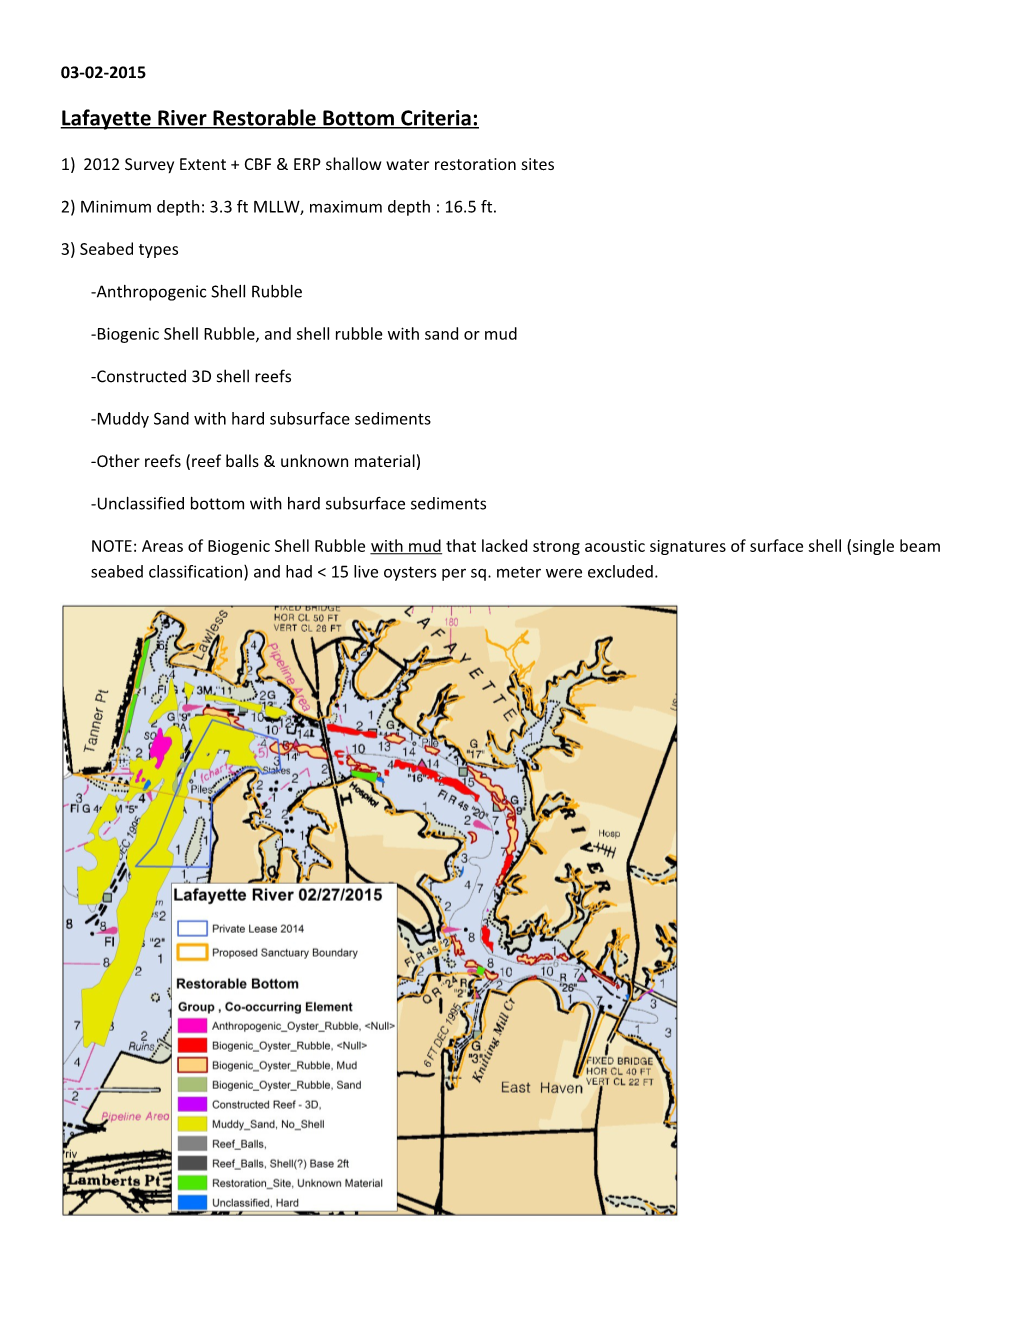 Lafayette River Restorable Bottom Criteria